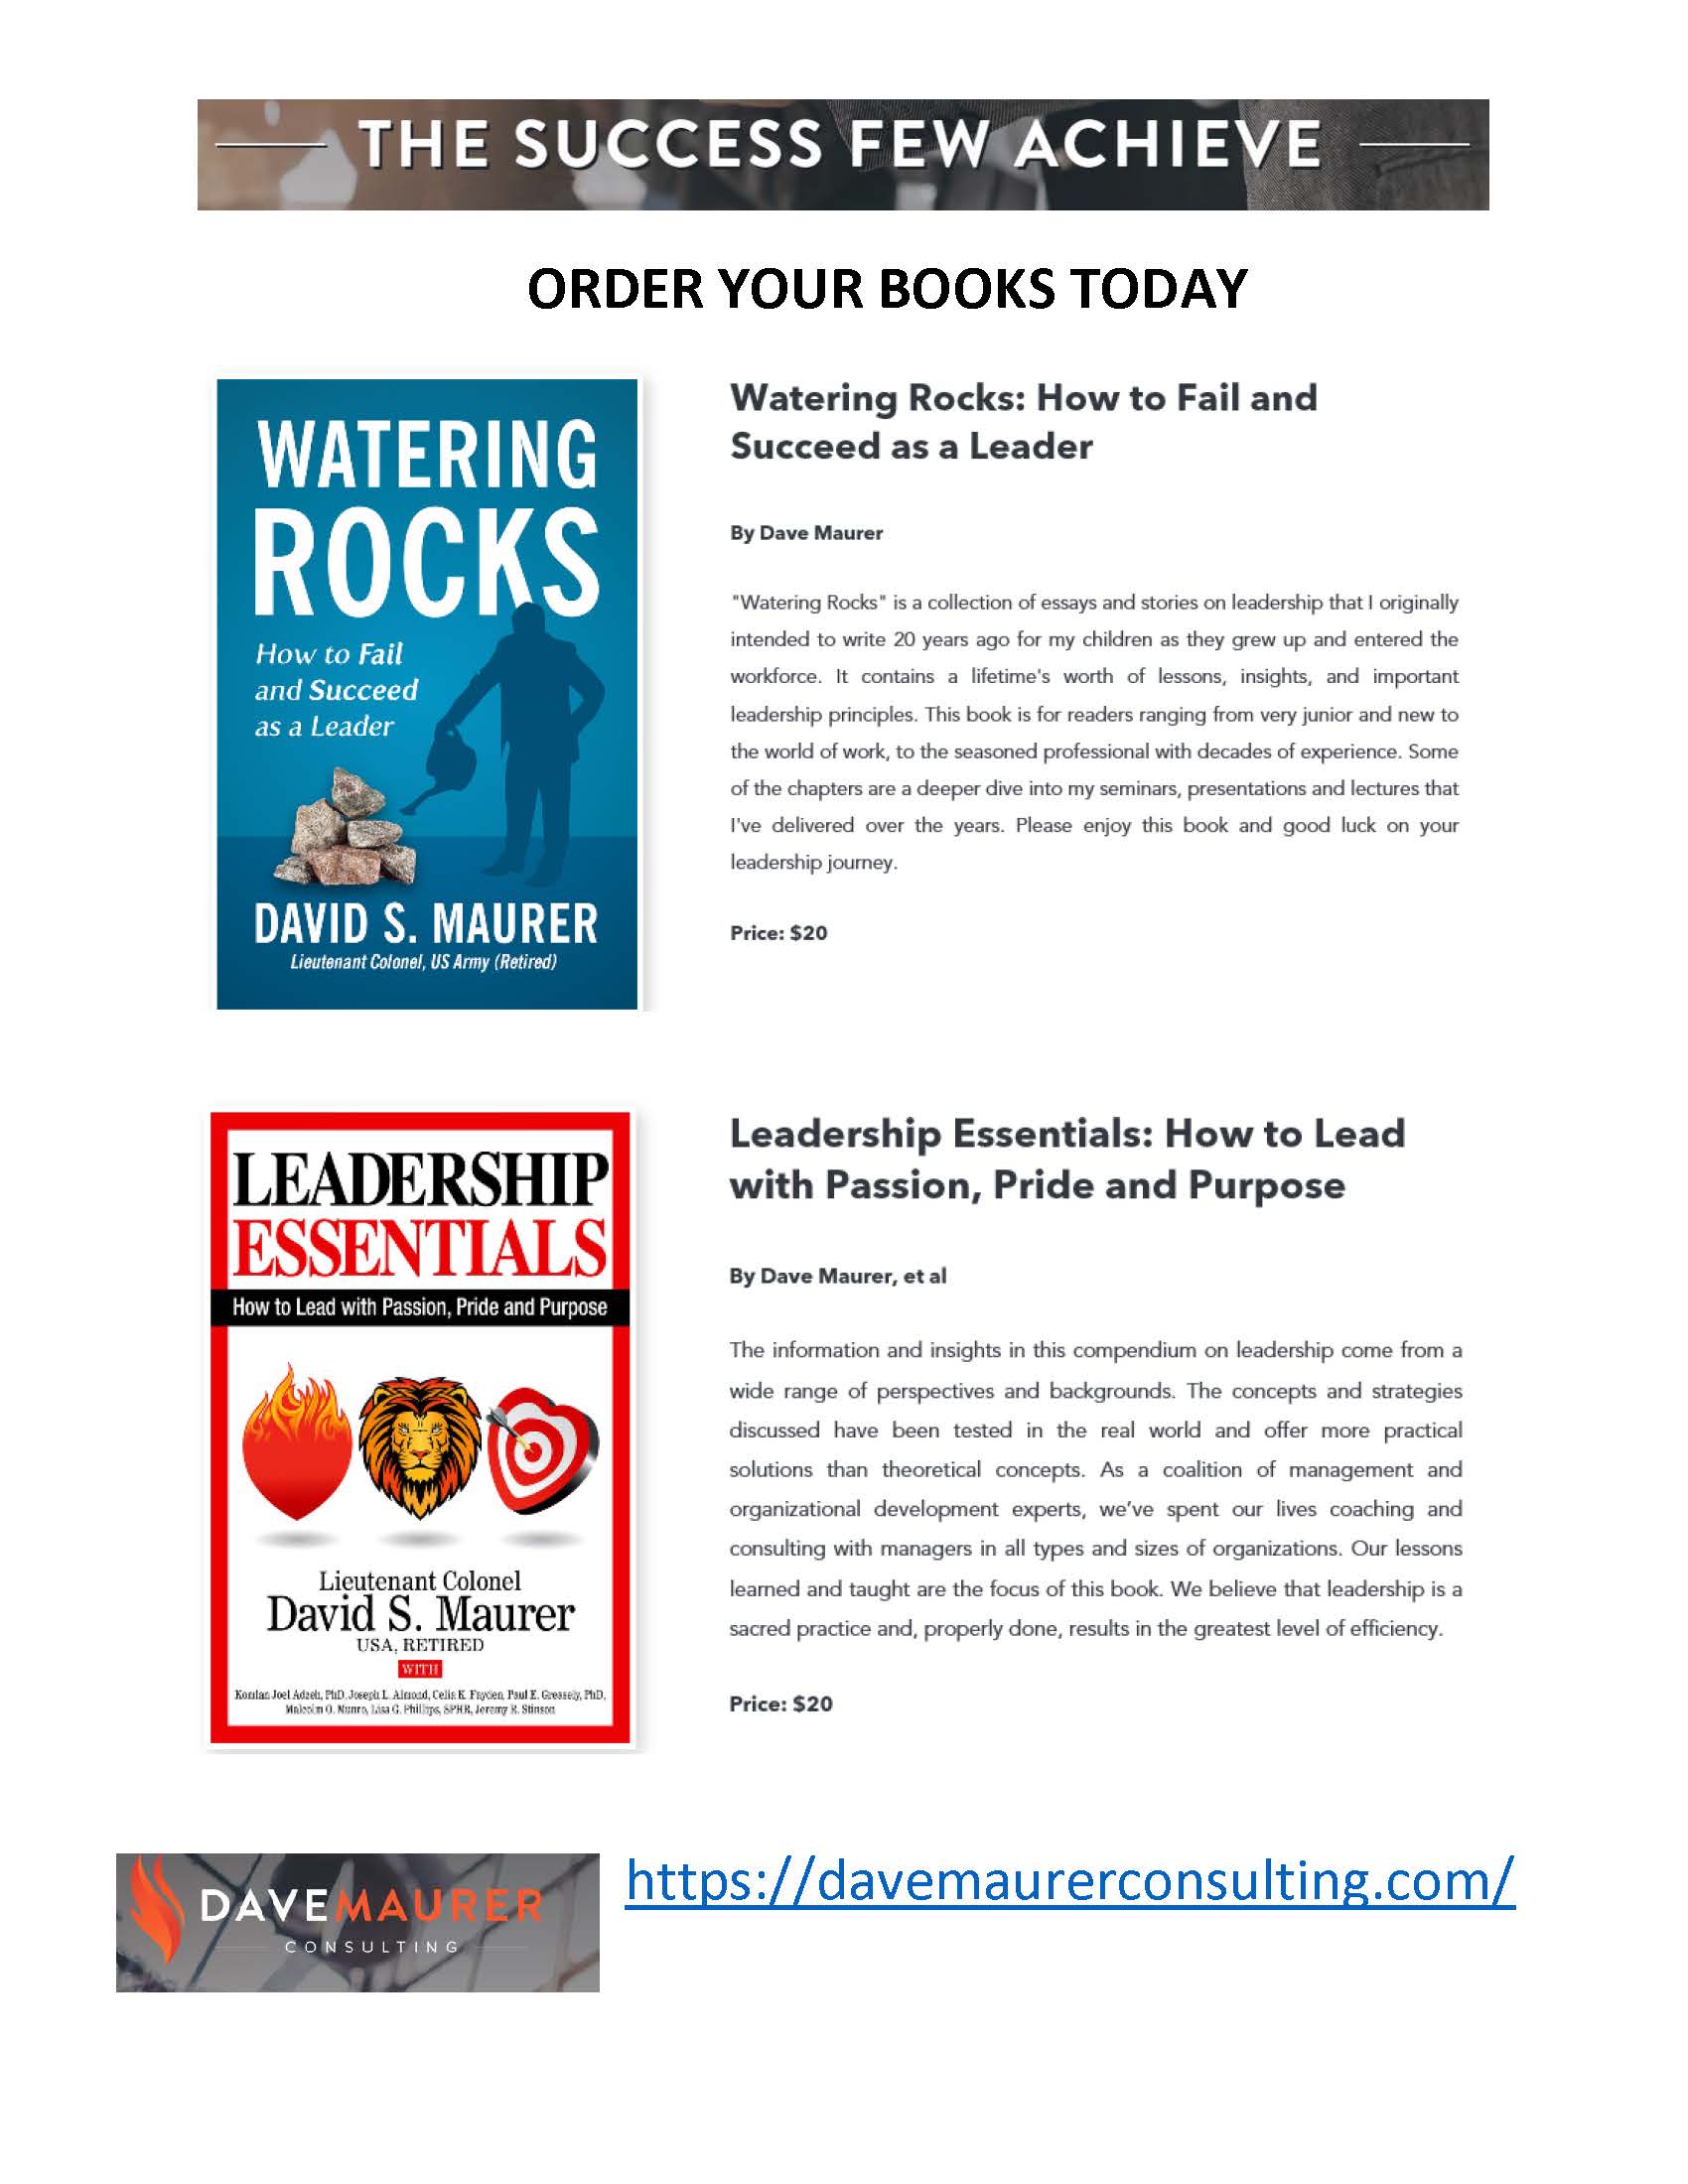 Leadership books